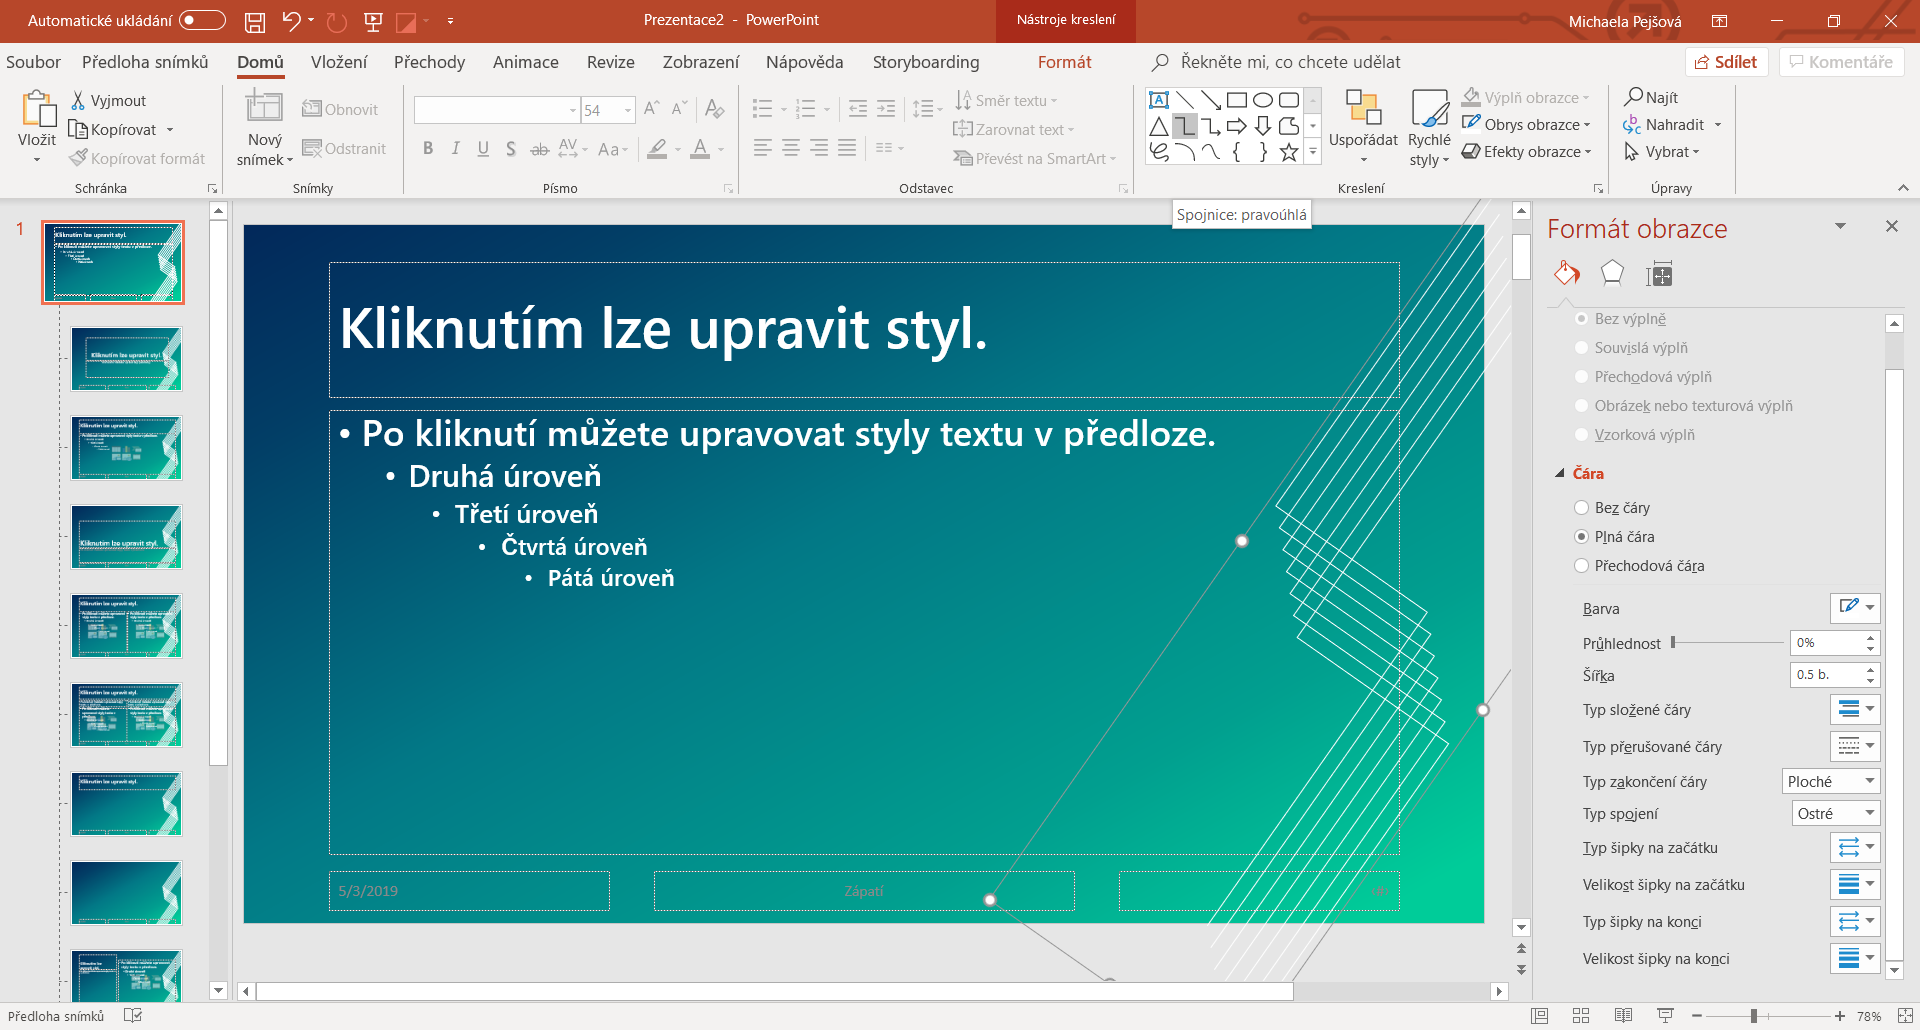 Vytvoření ornamentu v předloze snímku v Microsoft PowerPoint - Základy Microsoft PowerPoint